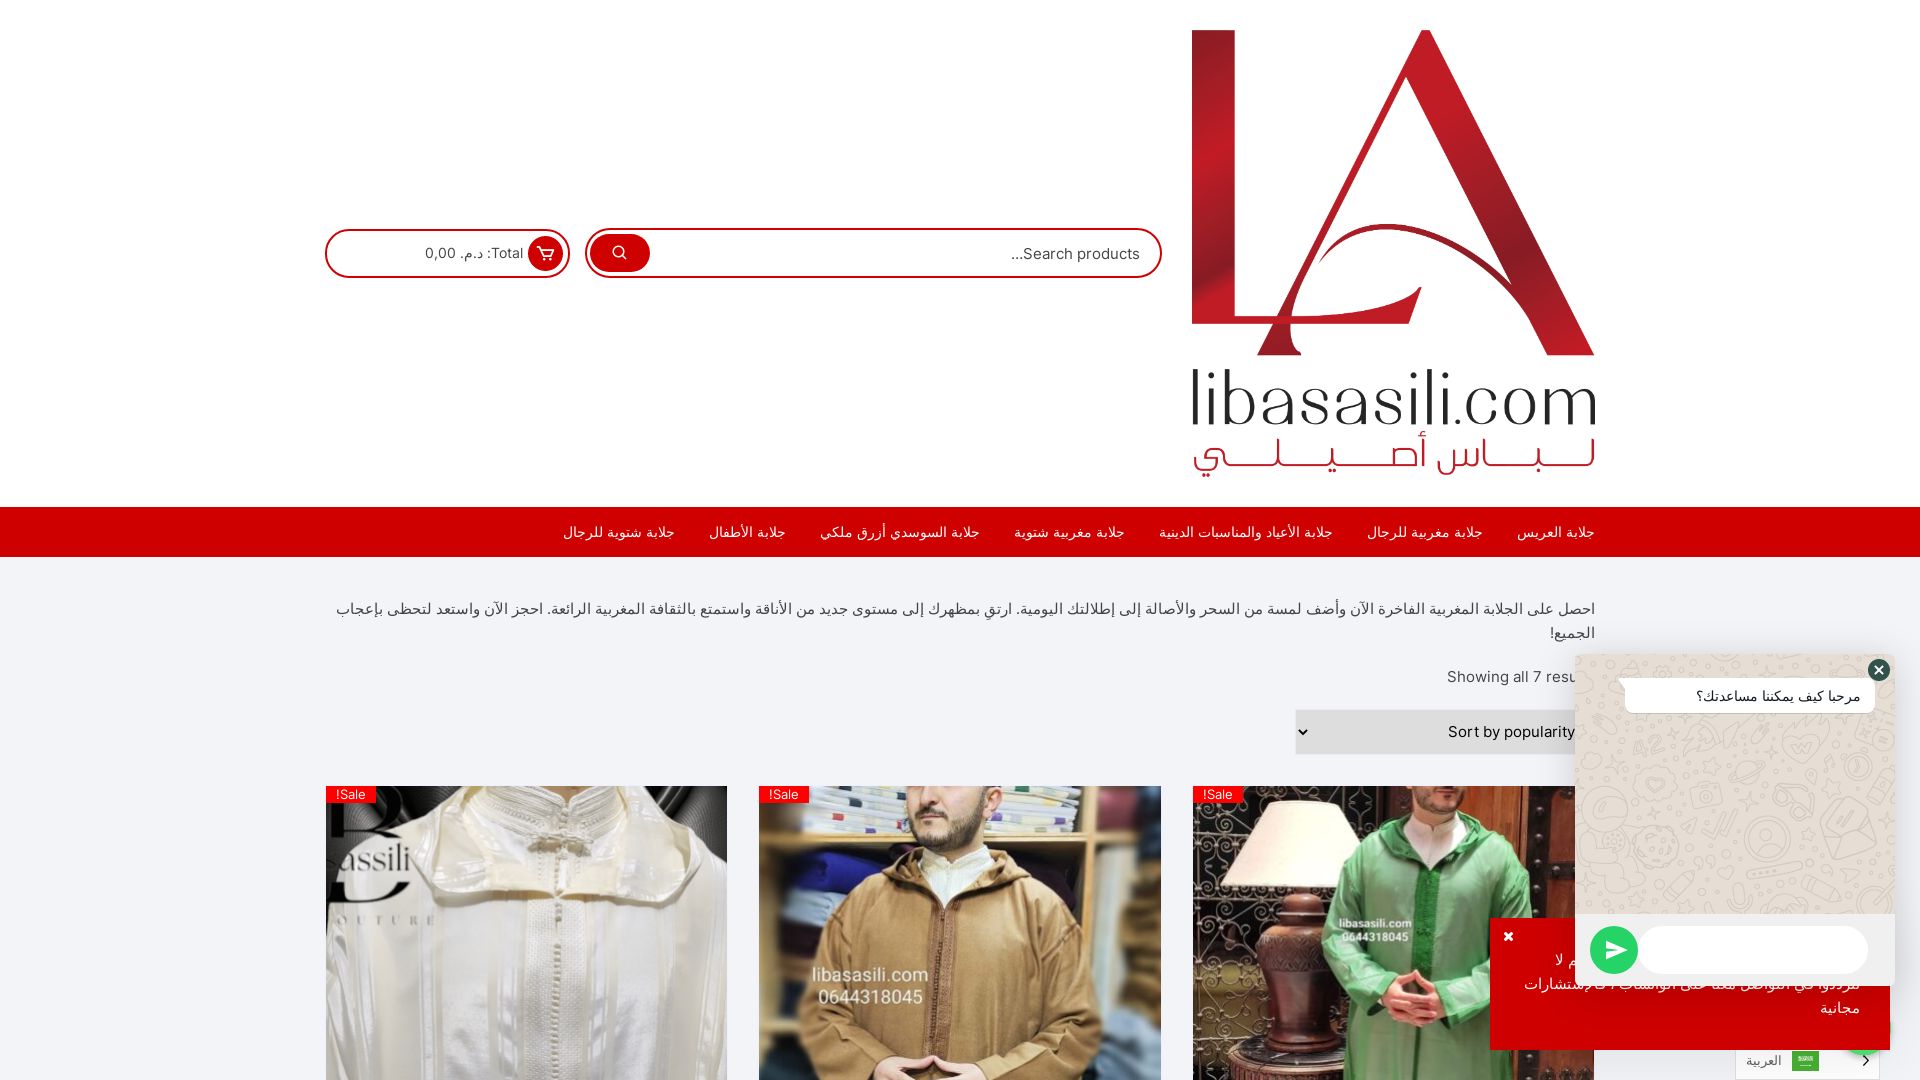 网站状态 libasasili.com 是  在线的